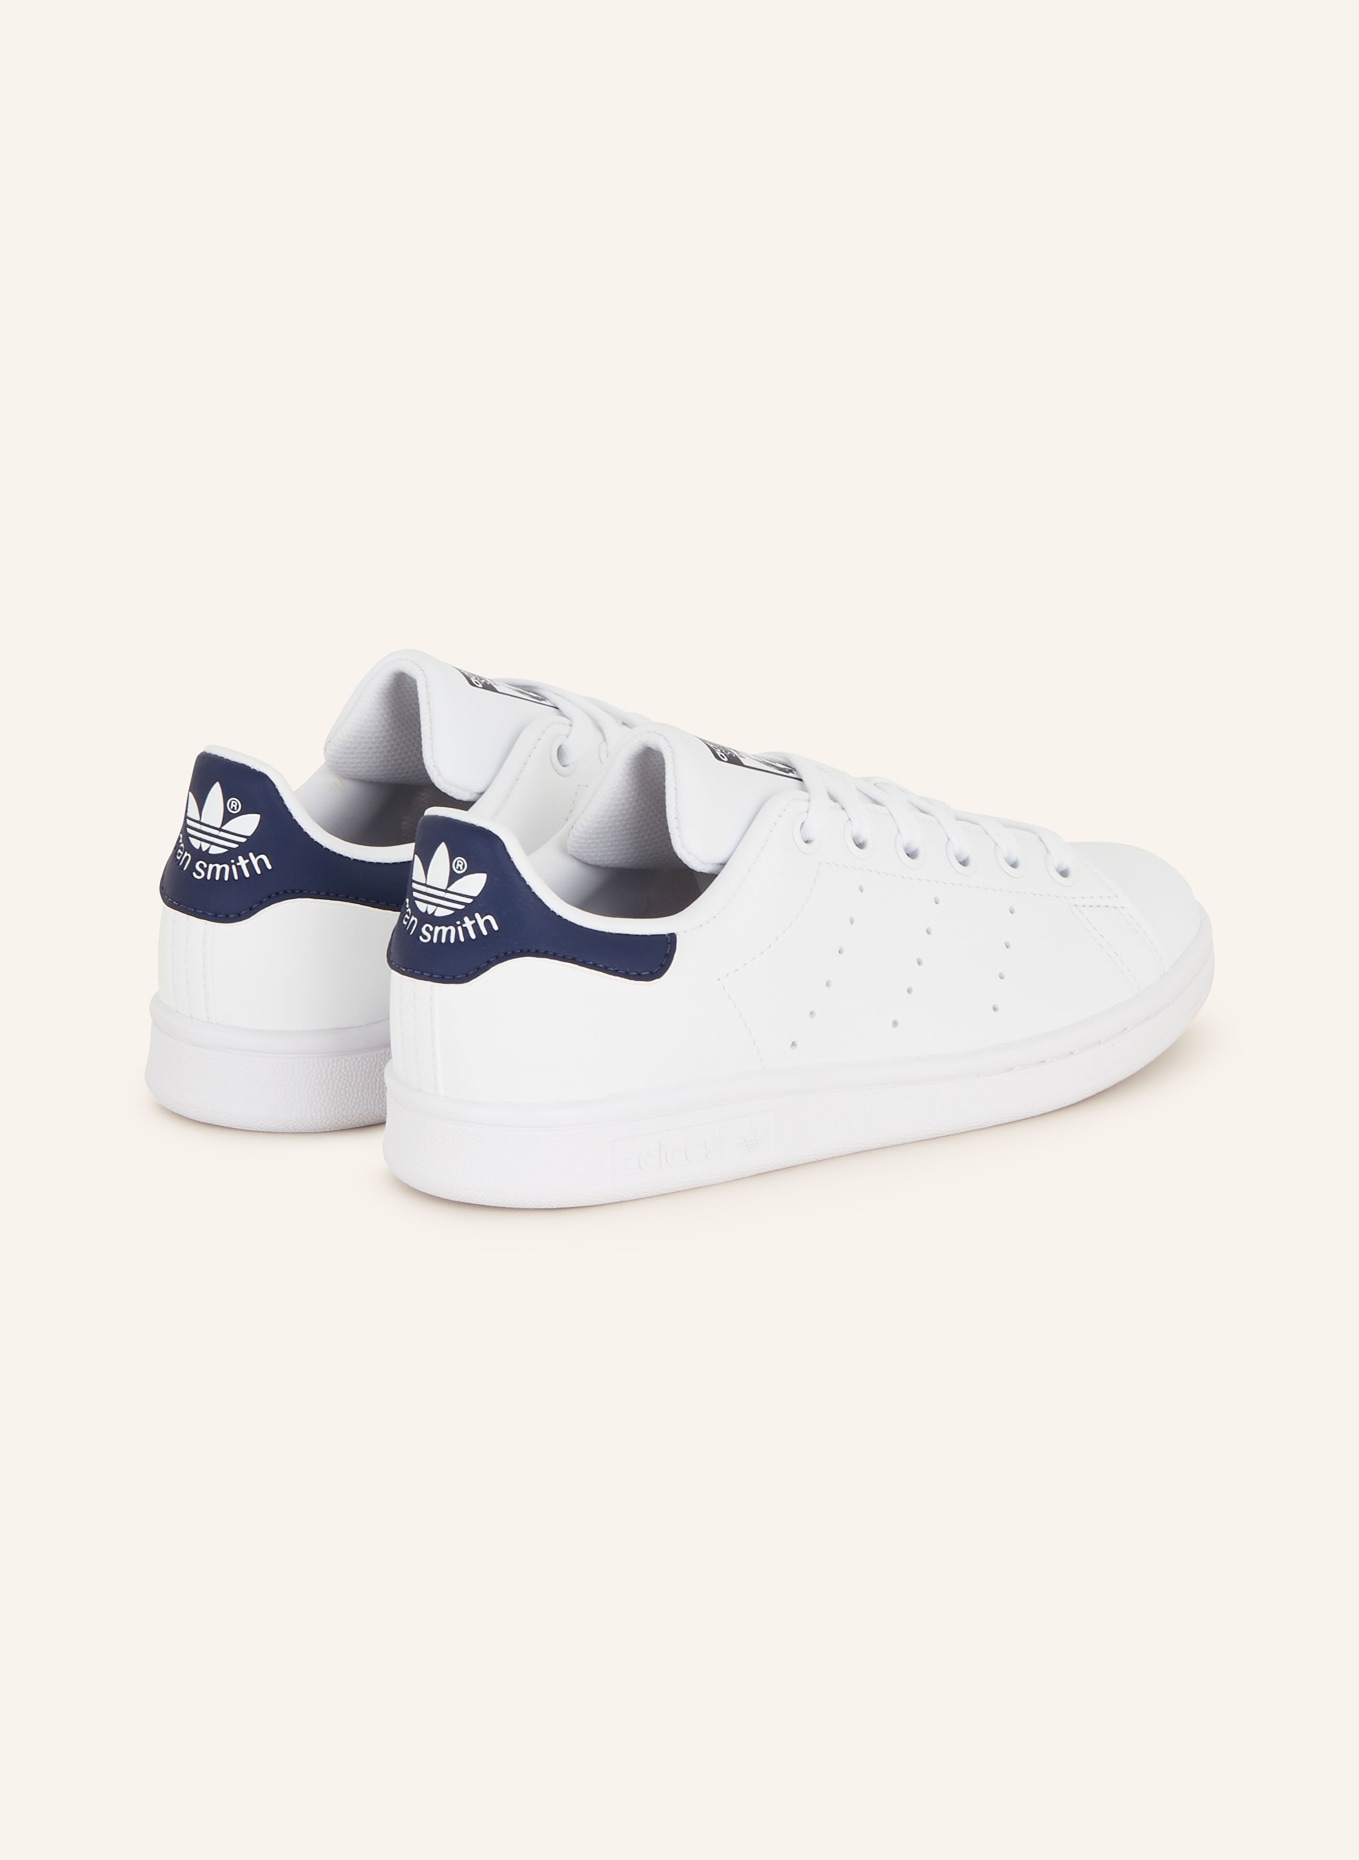 adidas in SMITH dunkelblau Sneaker weiss/ Originals STAN